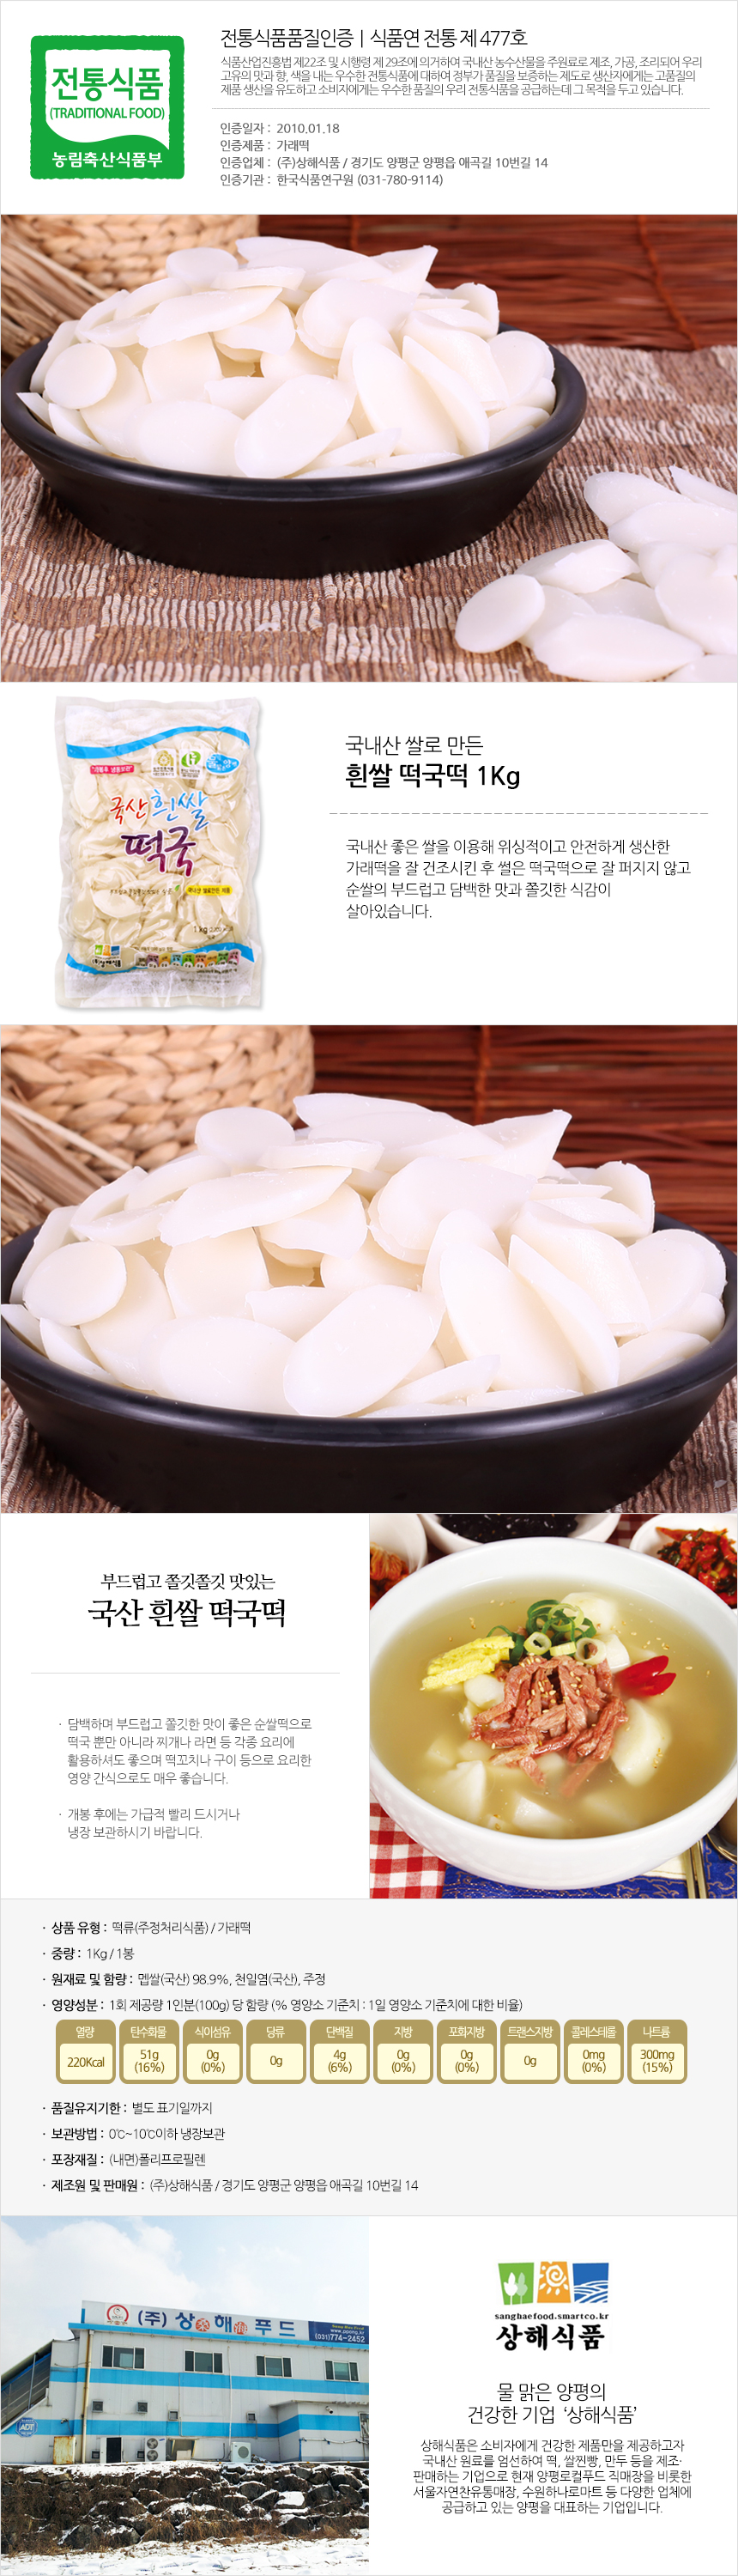 상해식품 흰쌀떡국떡 1Kg소개.jpg